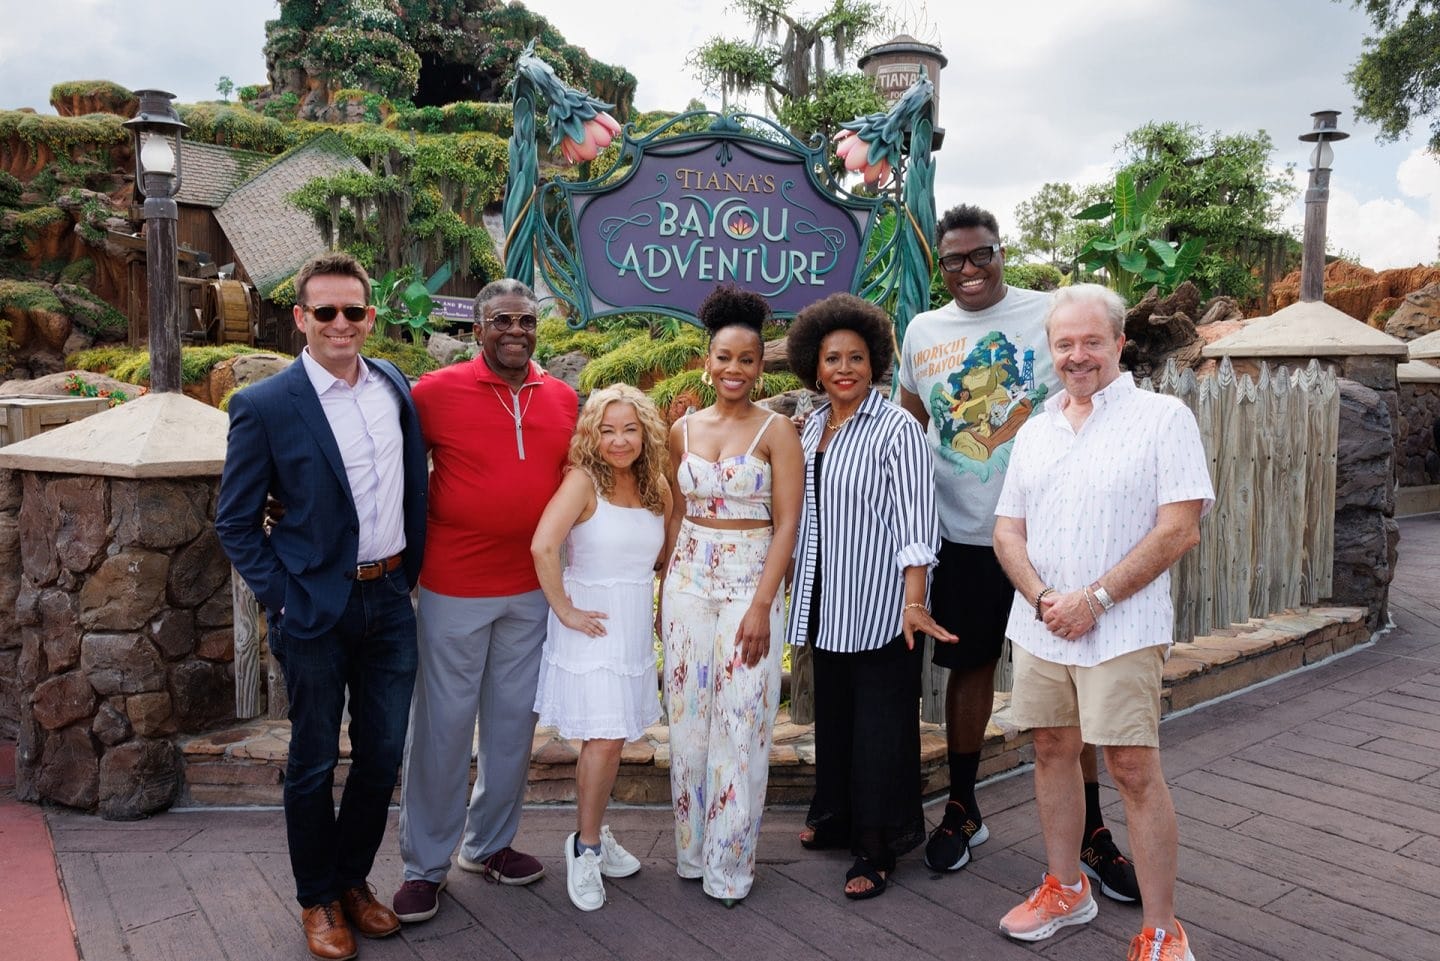 Tianas-Bayou-Adventure-Elenco Elenco de 'A Princesa e o Sapo' visita nova atração de Tiana na Disney